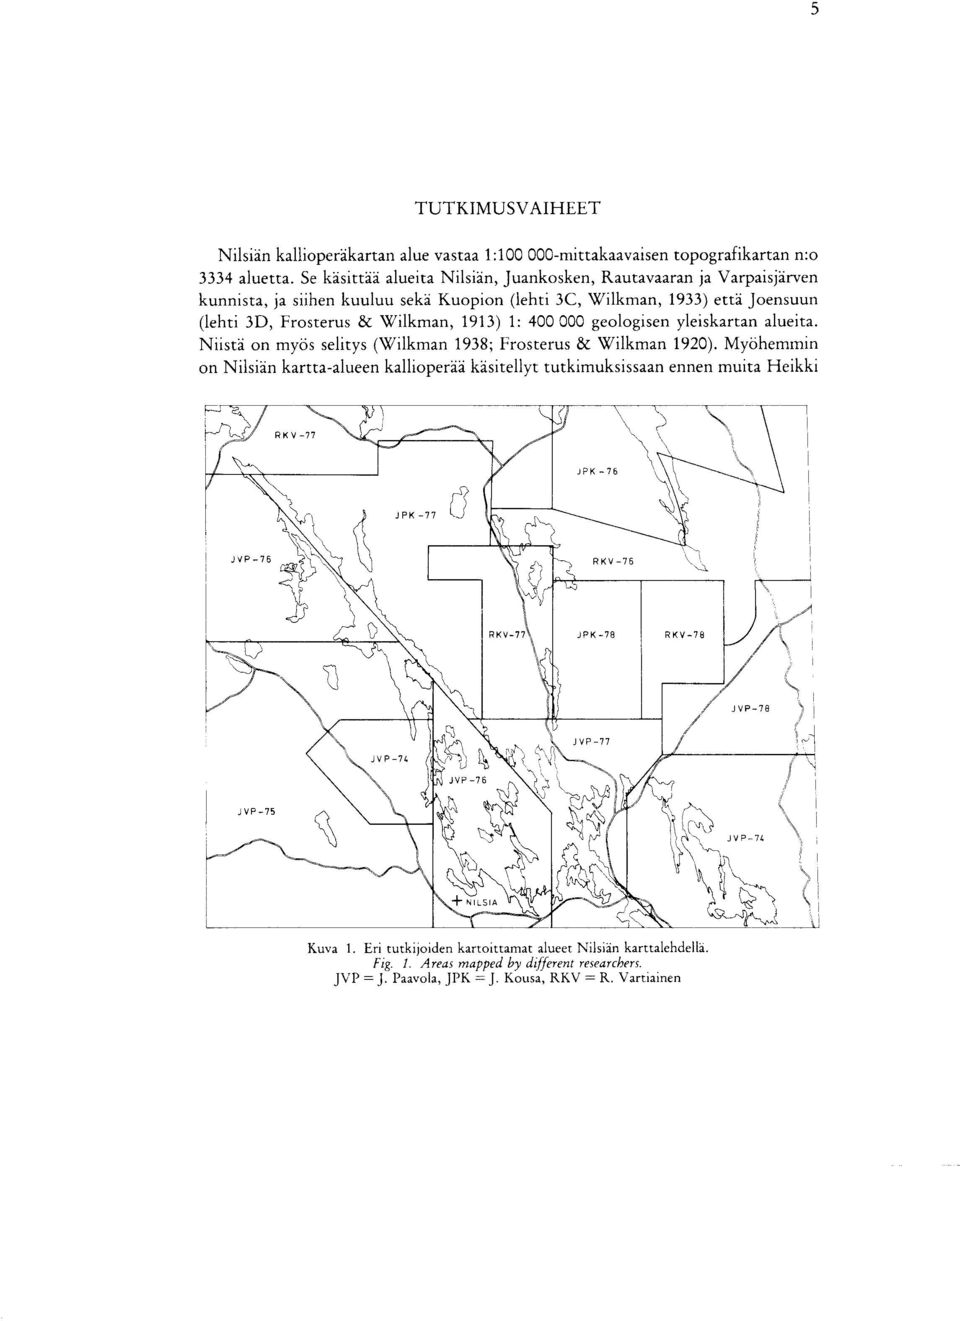 & Wilkman, 1913) 1 : 400 000 geologisen yleiskartan alueita. Niista on myos selitys (Wilkman 1938 ; Frosterus & Wilkman 1920).